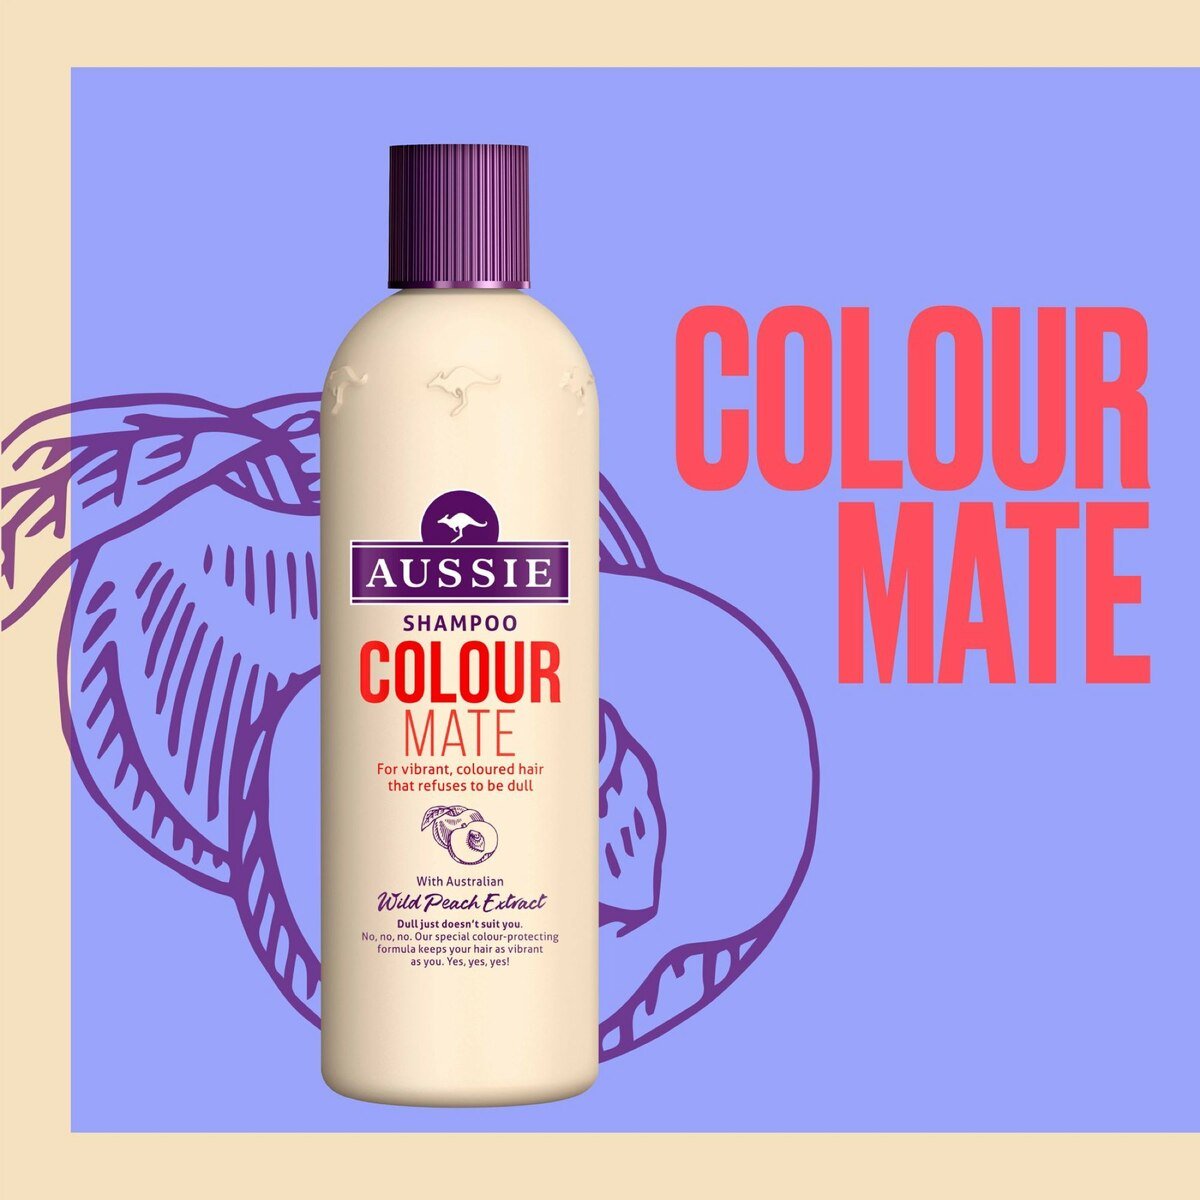 Aussie Colour Mate Shampoo, For Vibrant, Coloured Hair 300 ml